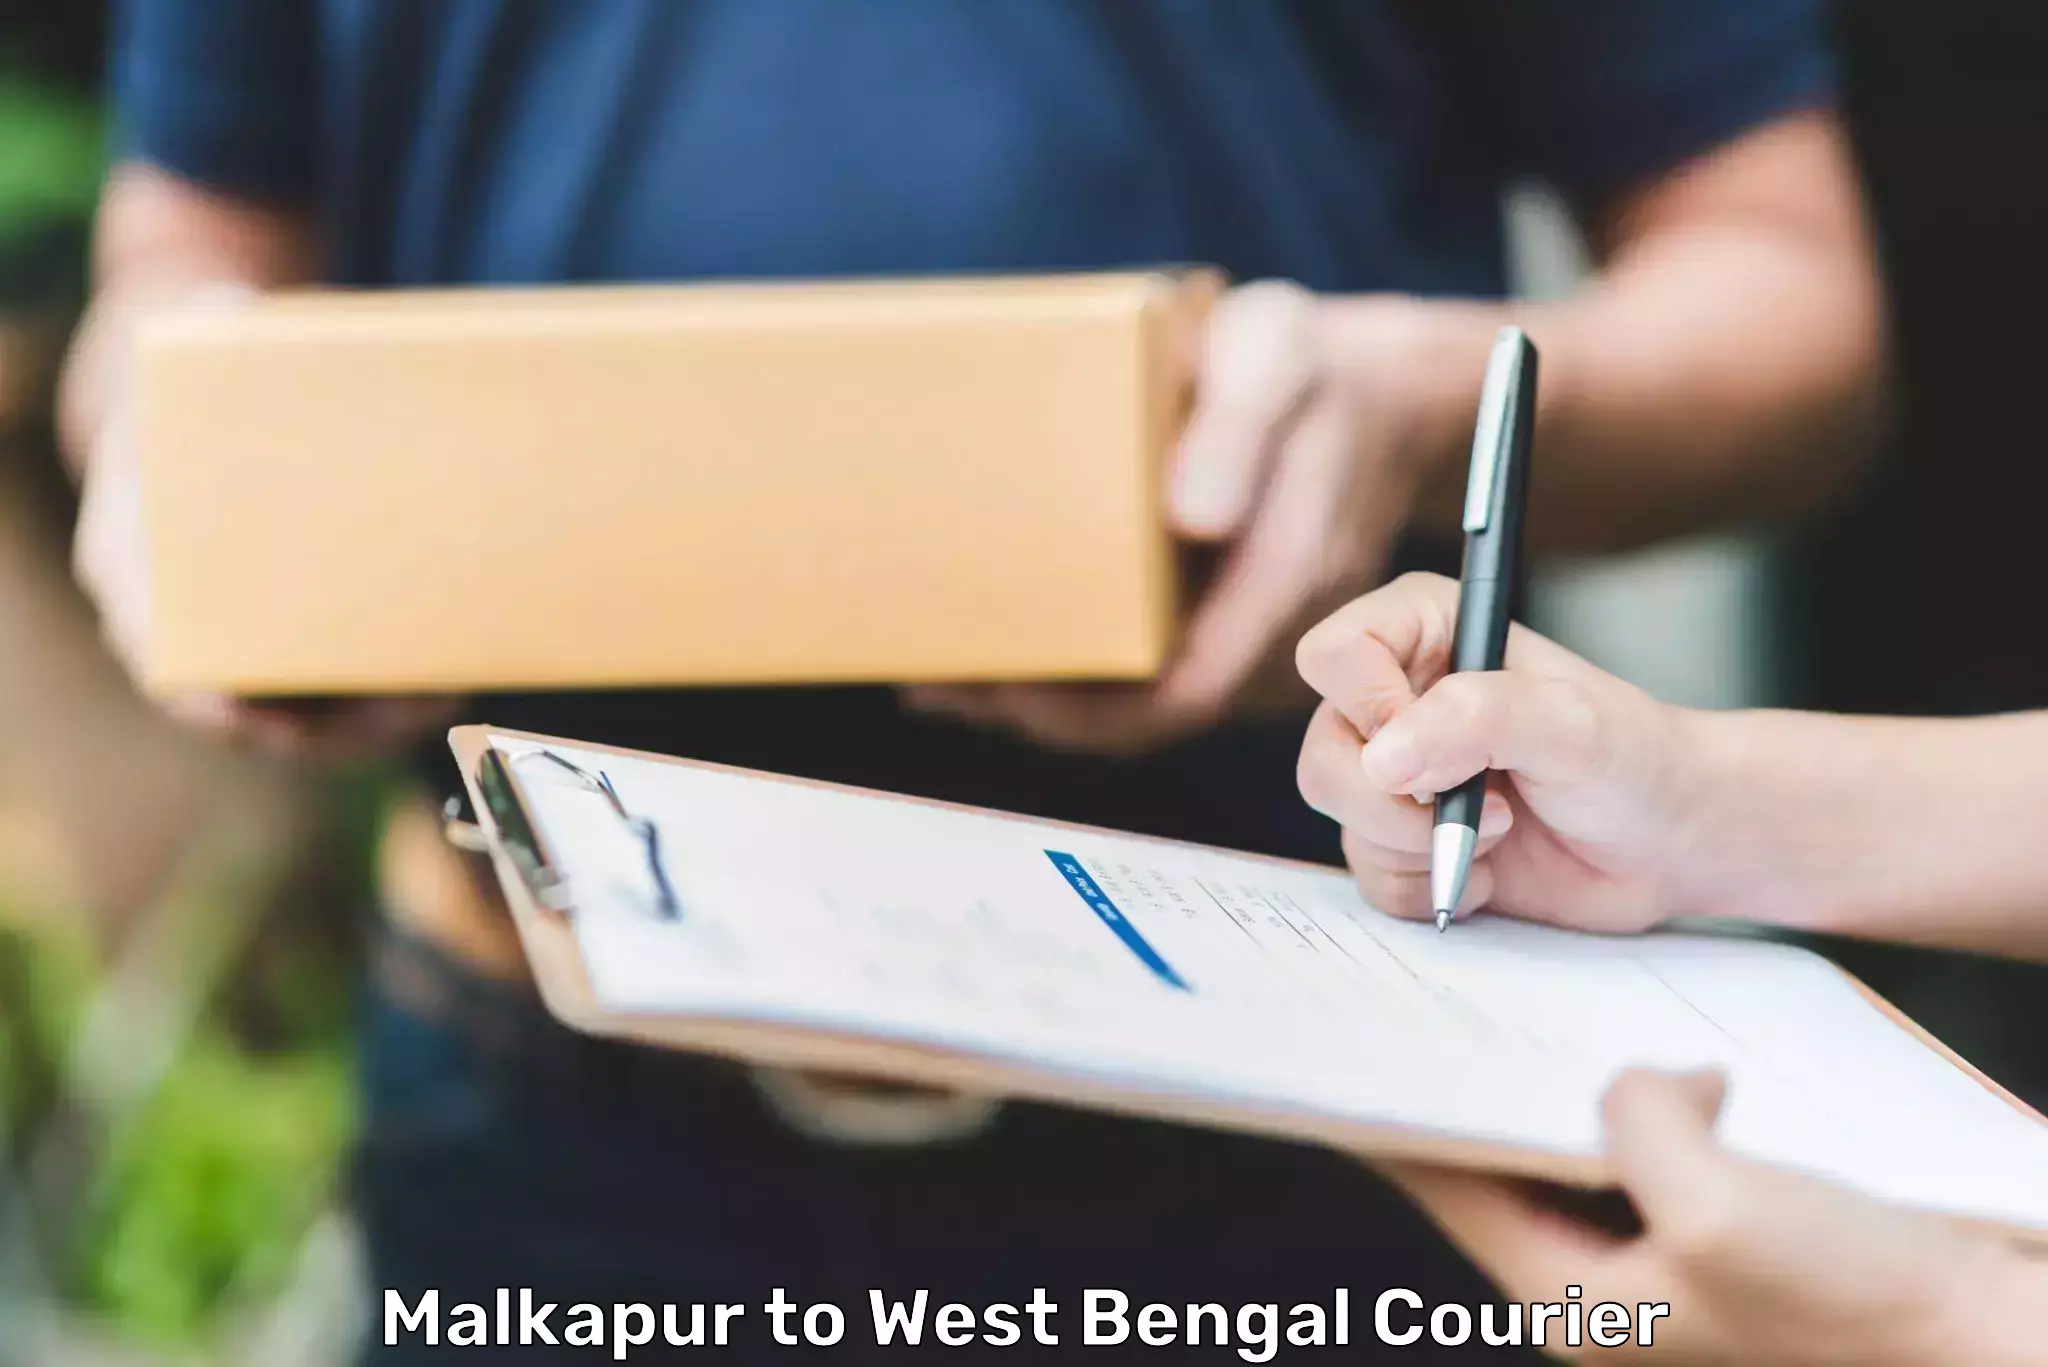 Tech-enabled shipping Malkapur to Kolkata Port